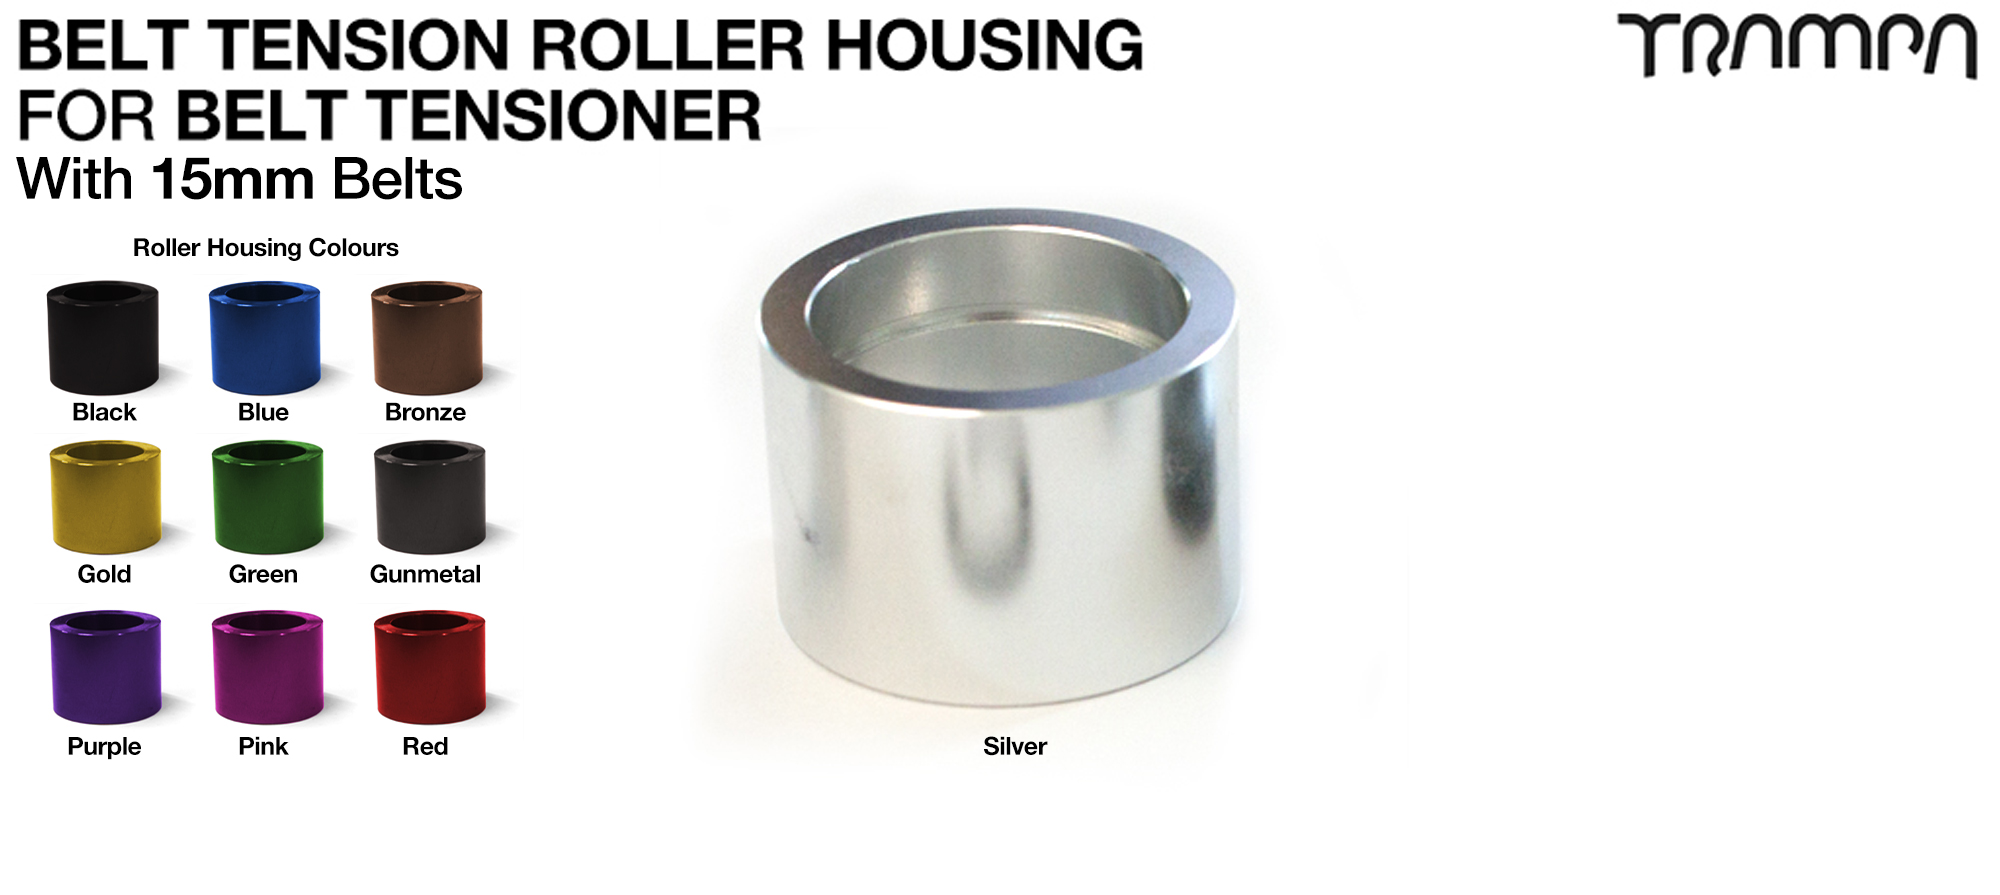 Belt Tension Roller Housing - CUSTOM 15mm or 20mm